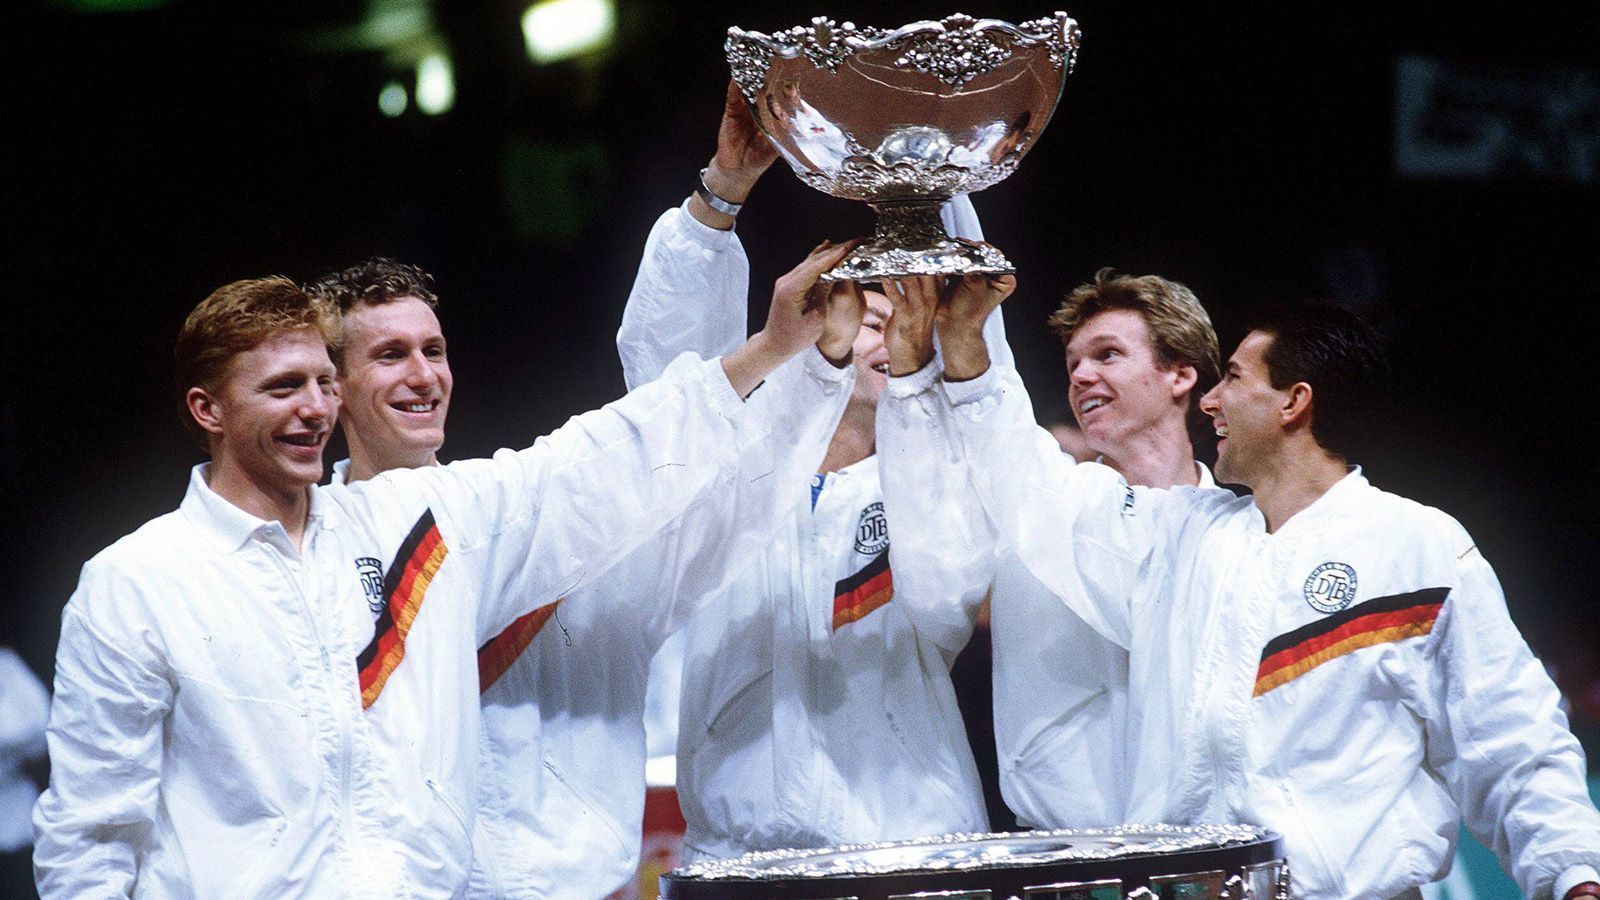 
                <strong>Viermaliger Sportler des Jahres und Davis-Cup-Sieger</strong><br>
                Becker eilte von Erfolg zu Erfolg. Ein Jahr nach seinem Überraschungs-Sieg in Wimbledon konnte er das Grand-Slam-Turnier erneut gewinnen. Zum zweiten Mal in Folge wurde er daraufhin zu Deutschlands Sportler des Jahres gewählt. Insgesamt gewann er diese Auszeichnung vier Mal. Auch der Davis Cup ging im Jahre 1988 unter seiner Führung erstmals an das deutsche Team. 1991 war Becker erstmals die Nummer Eins der Weltrangliste. Insgesamt stand er in seiner Karriere zwölf Wochen lang an der Spitze des ATP-Rankings.
              